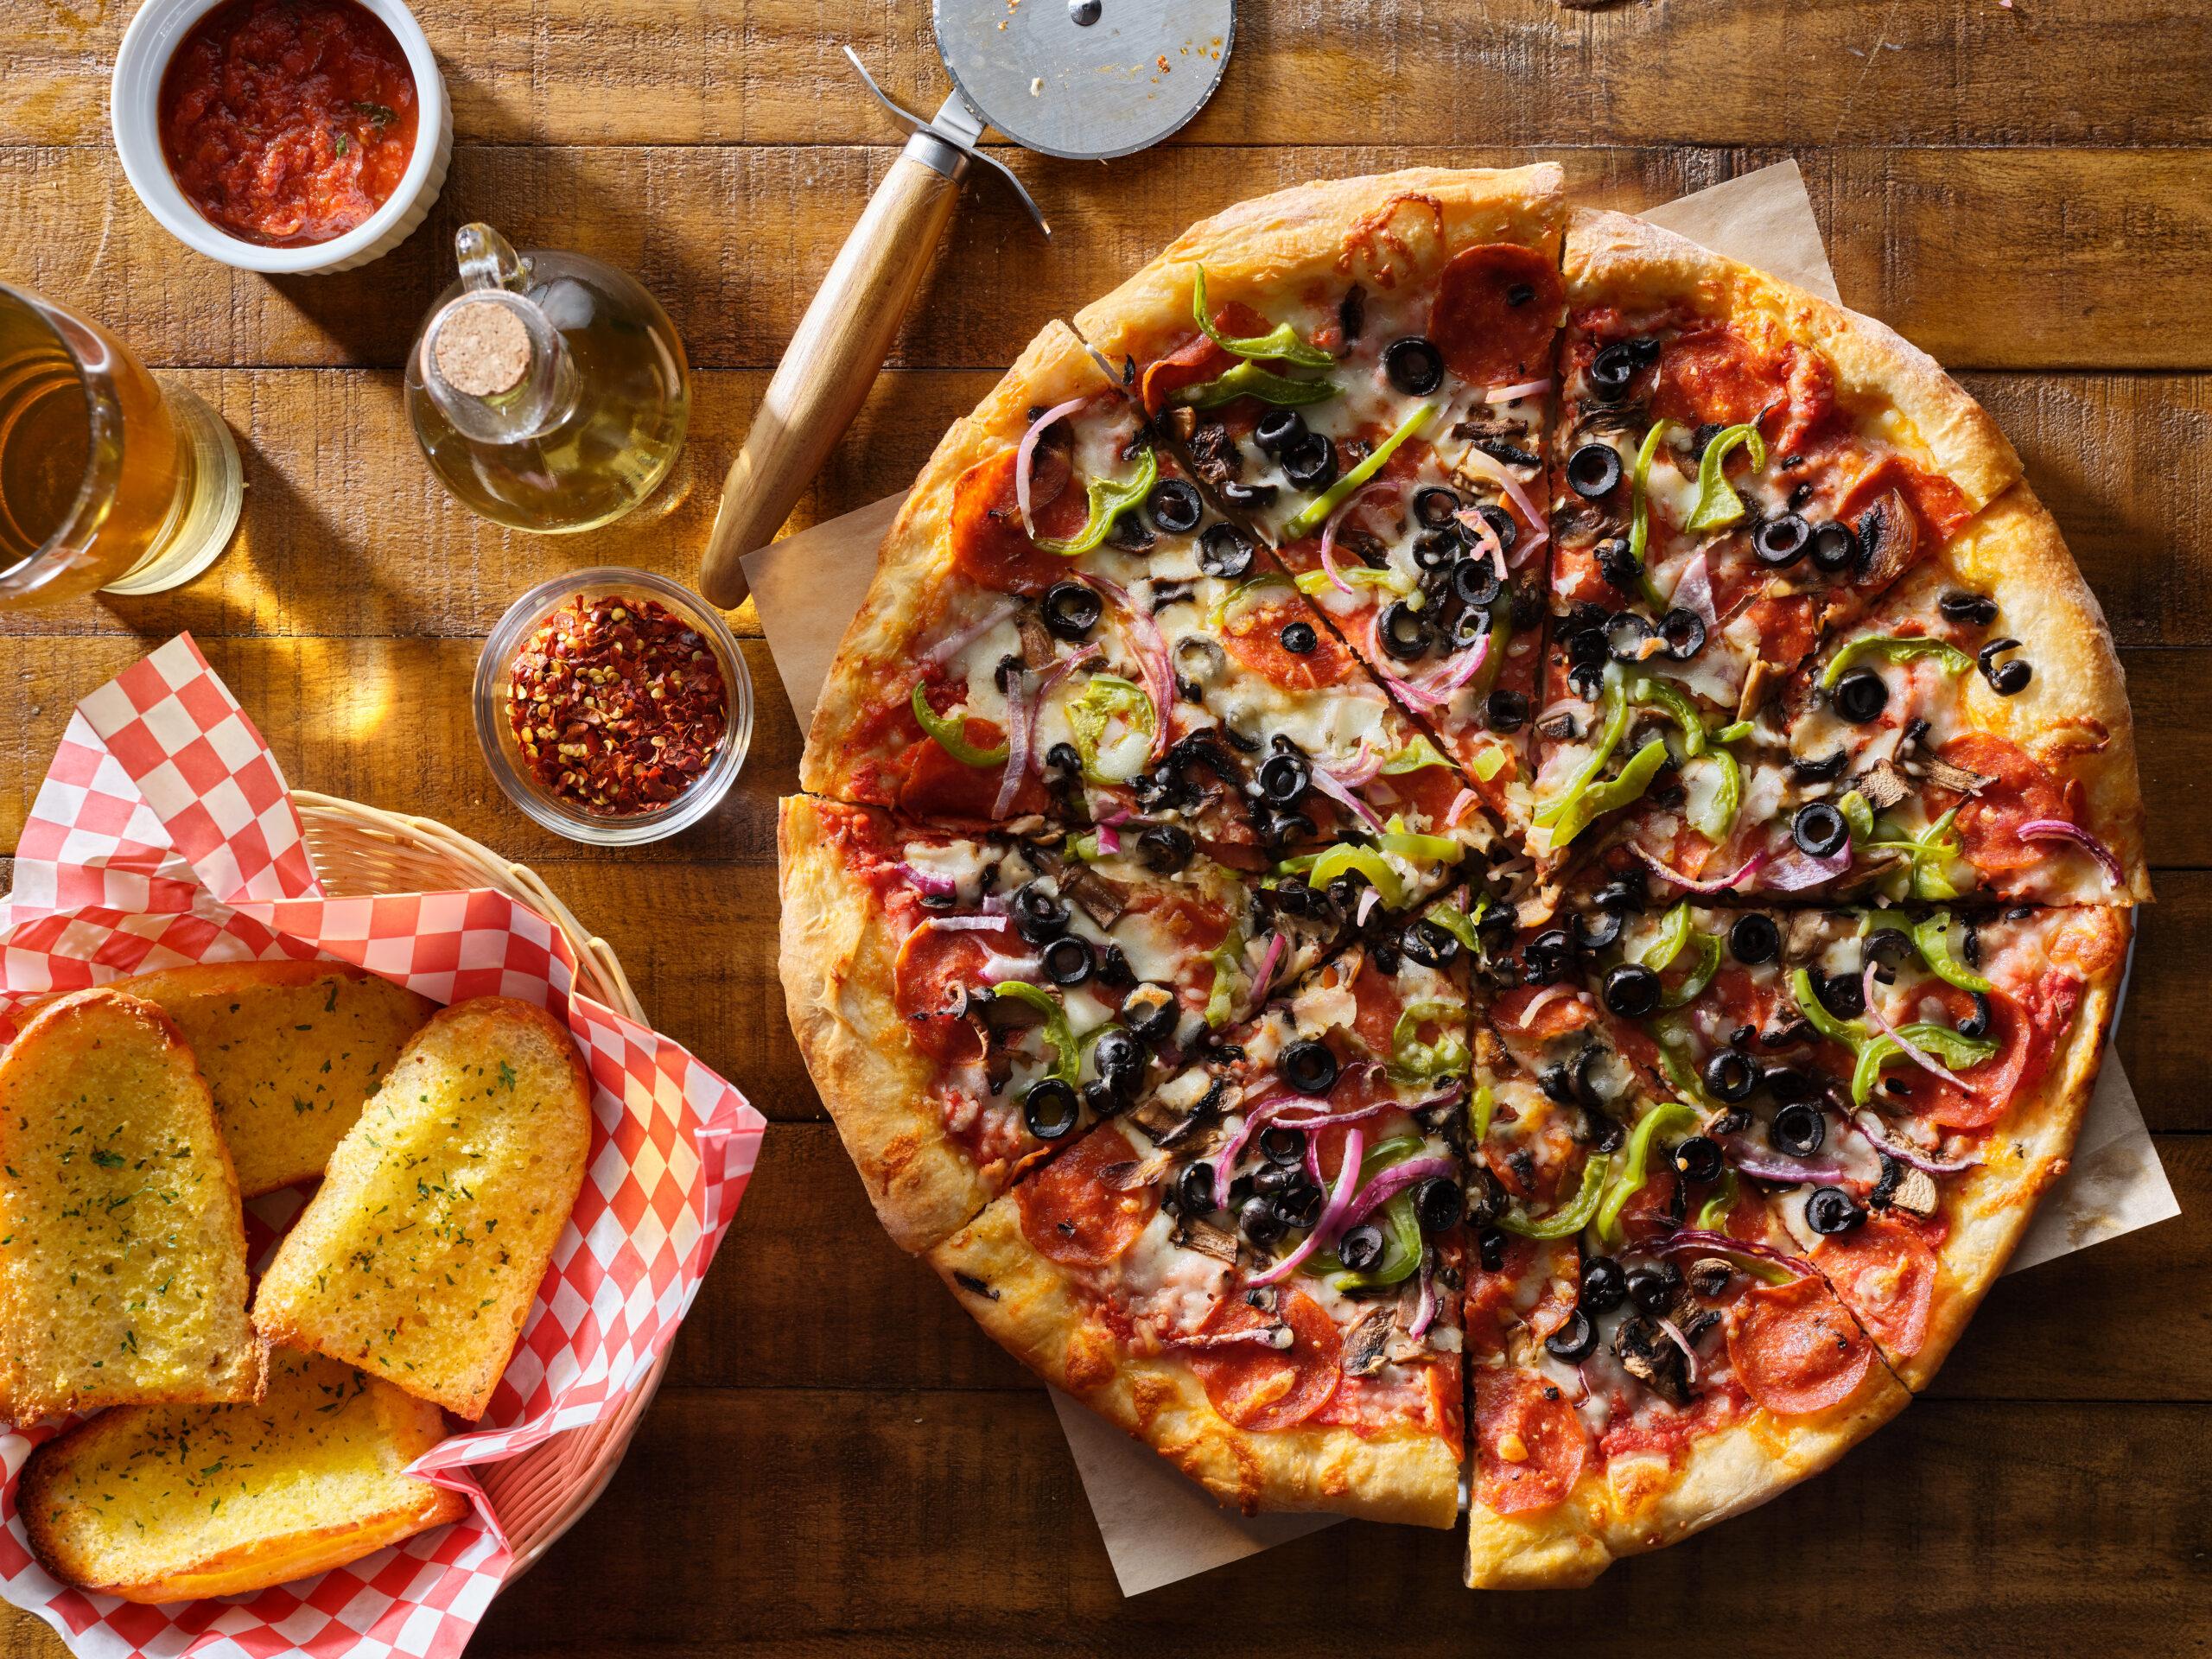 Salami-Pizza mit schwarzen Oliven und Peperoni, sowie Knoblauchbrot.